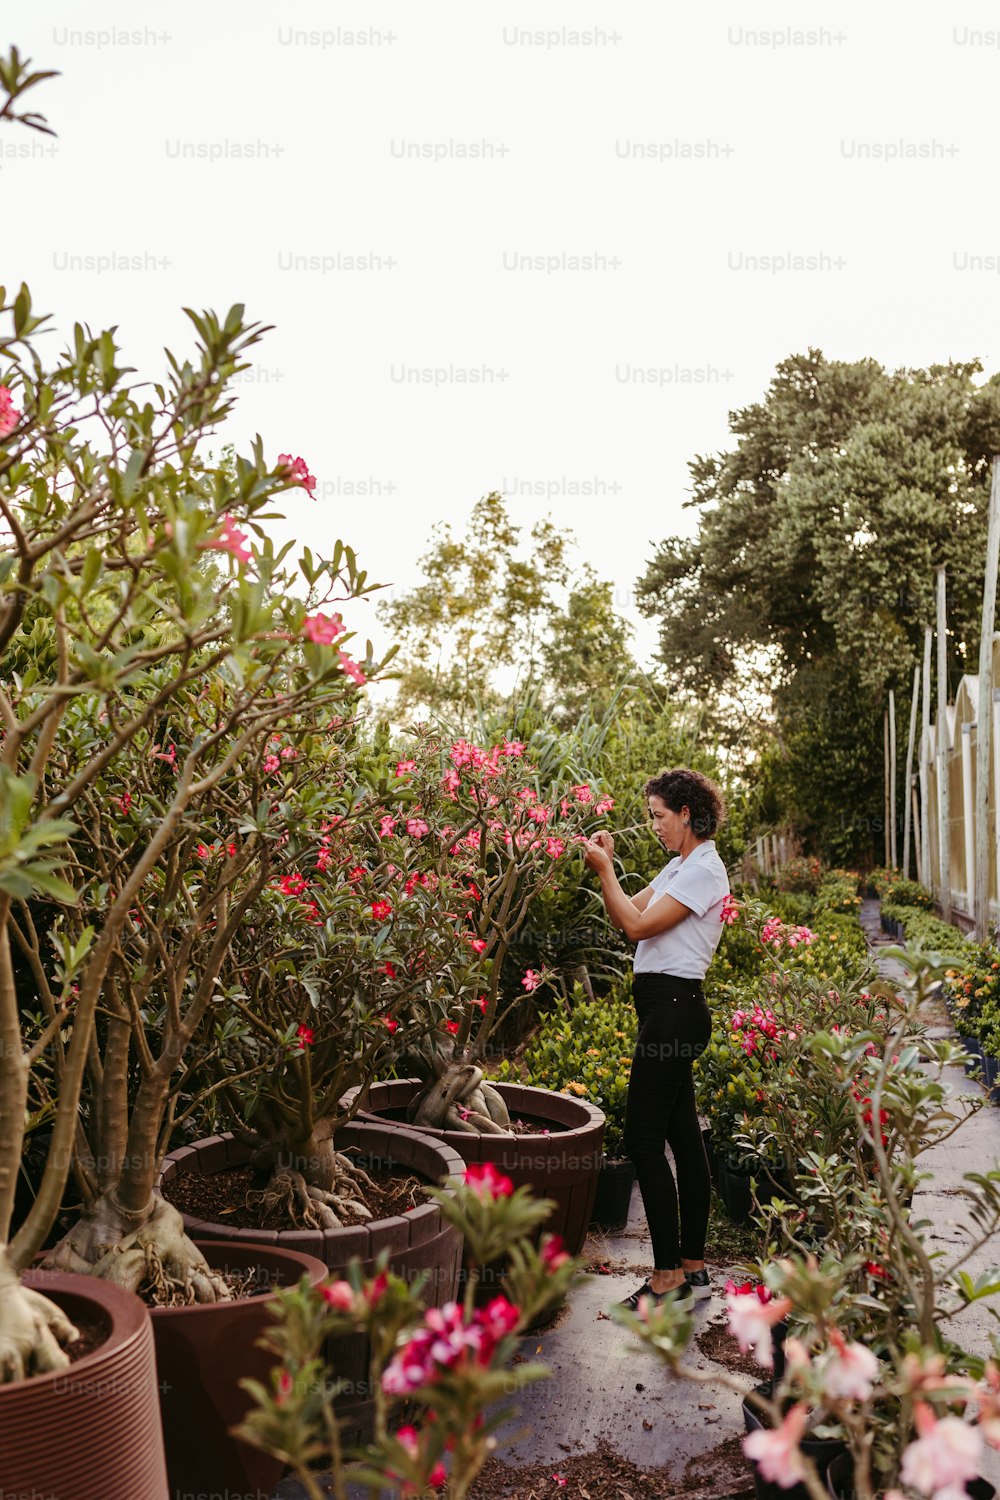 Una mujer parada en un jardín lleno de plantas en macetas